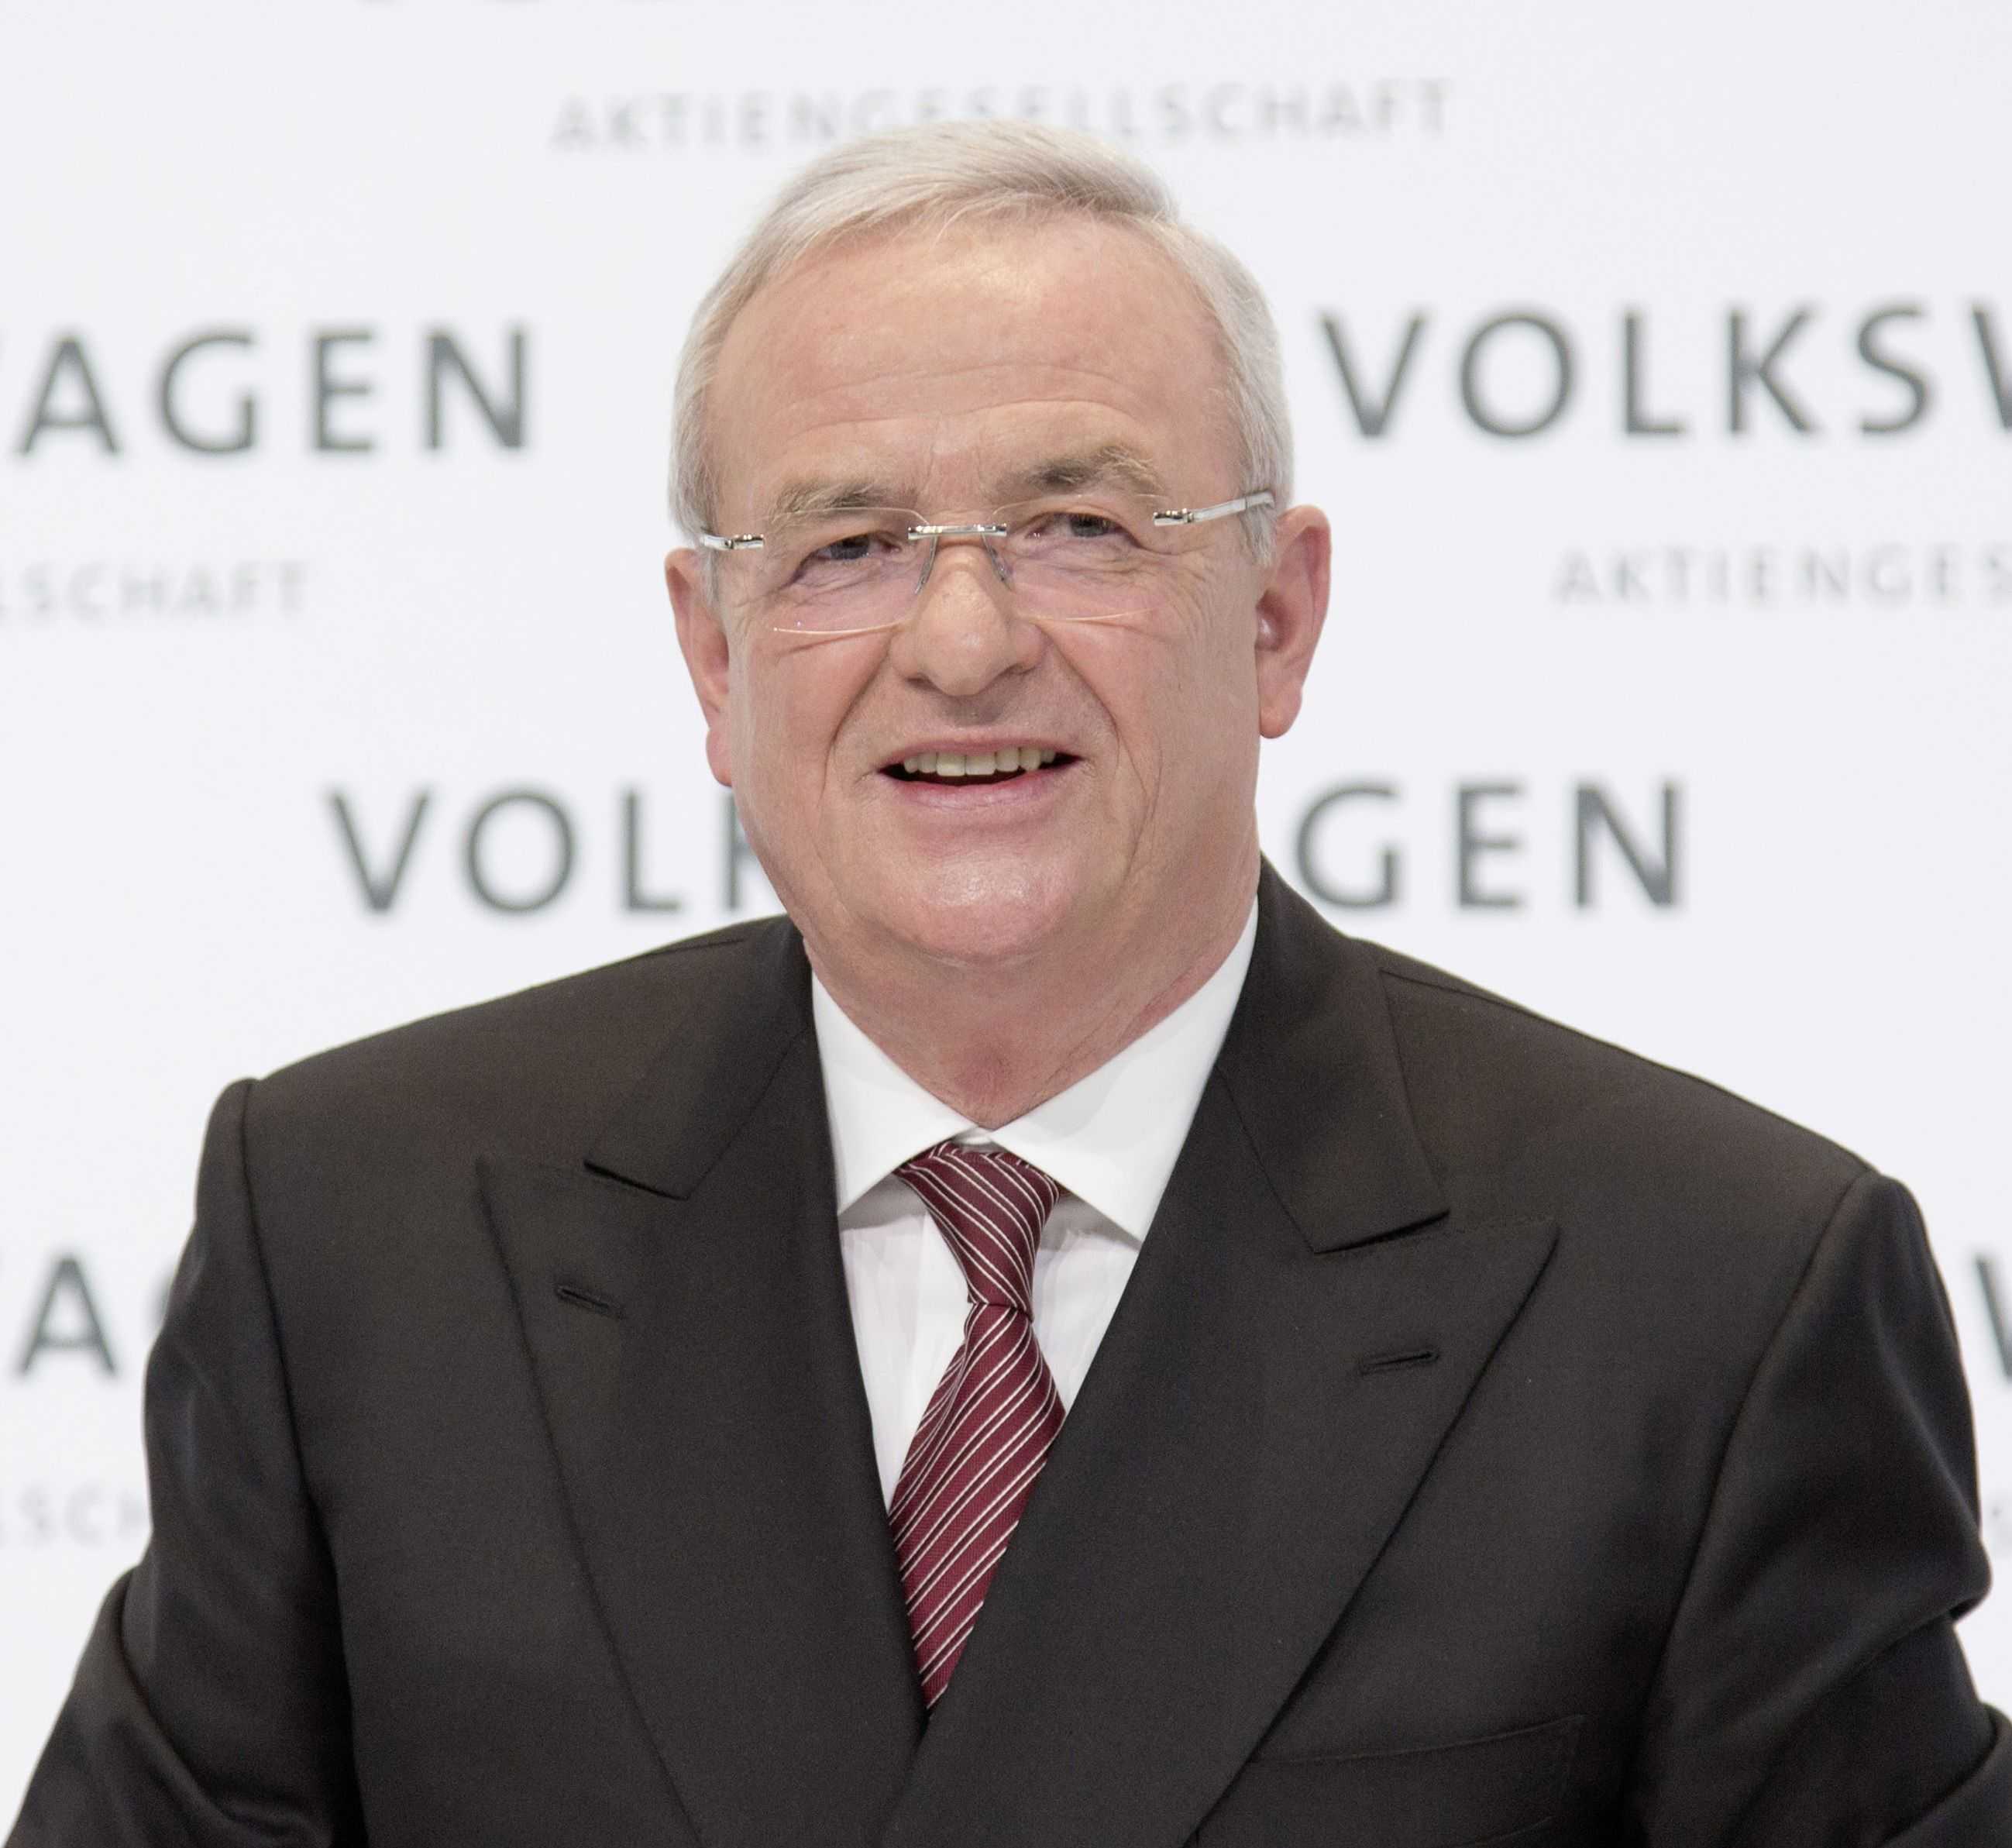 Pensió de 3.100 euros/dia per a l'expresident de Volkswagen que va dimitir pels motors trucats